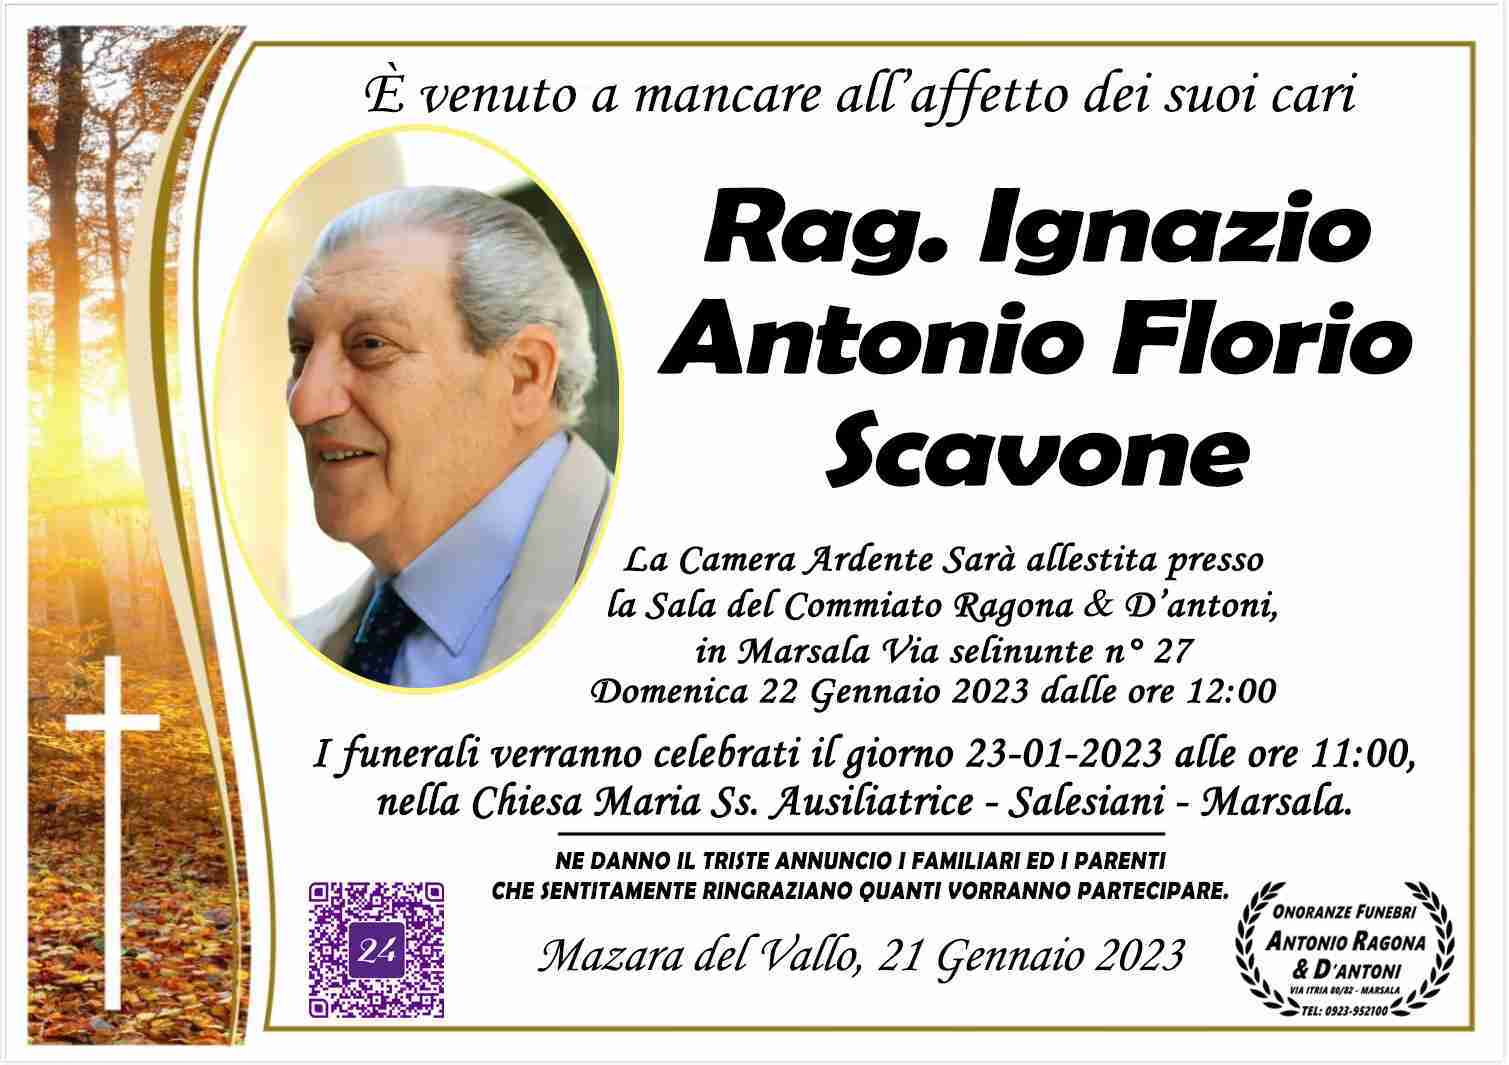 Rag. Ignazio Antonio Florio Scavone